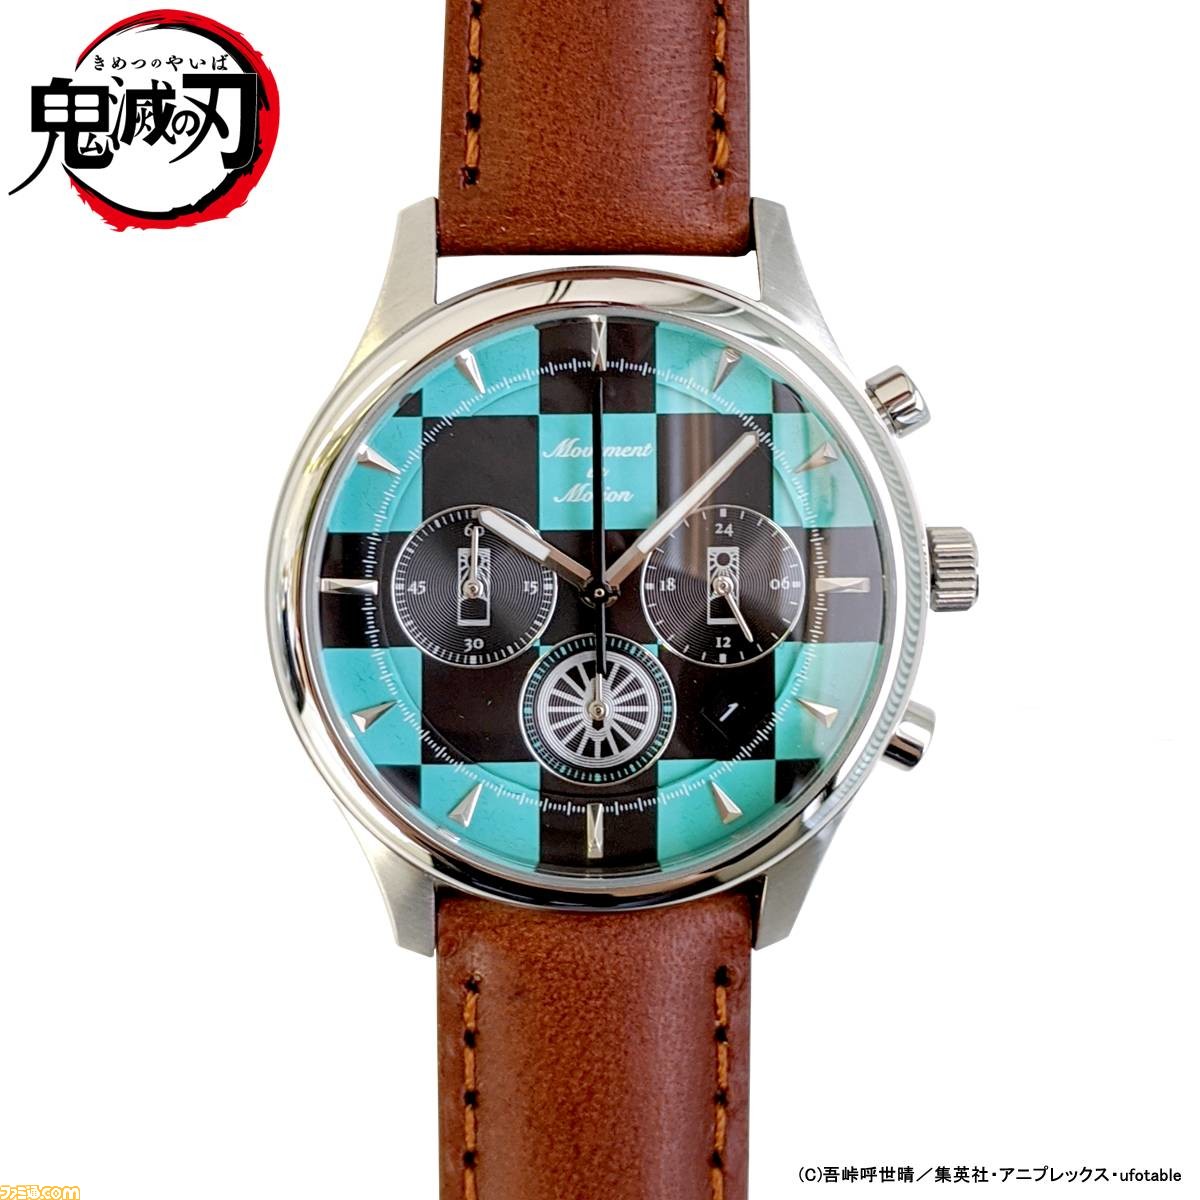 鬼滅の刃』×“TiCTAC”コラボ腕時計11月1日発売。炭治郎や禰豆子、善逸